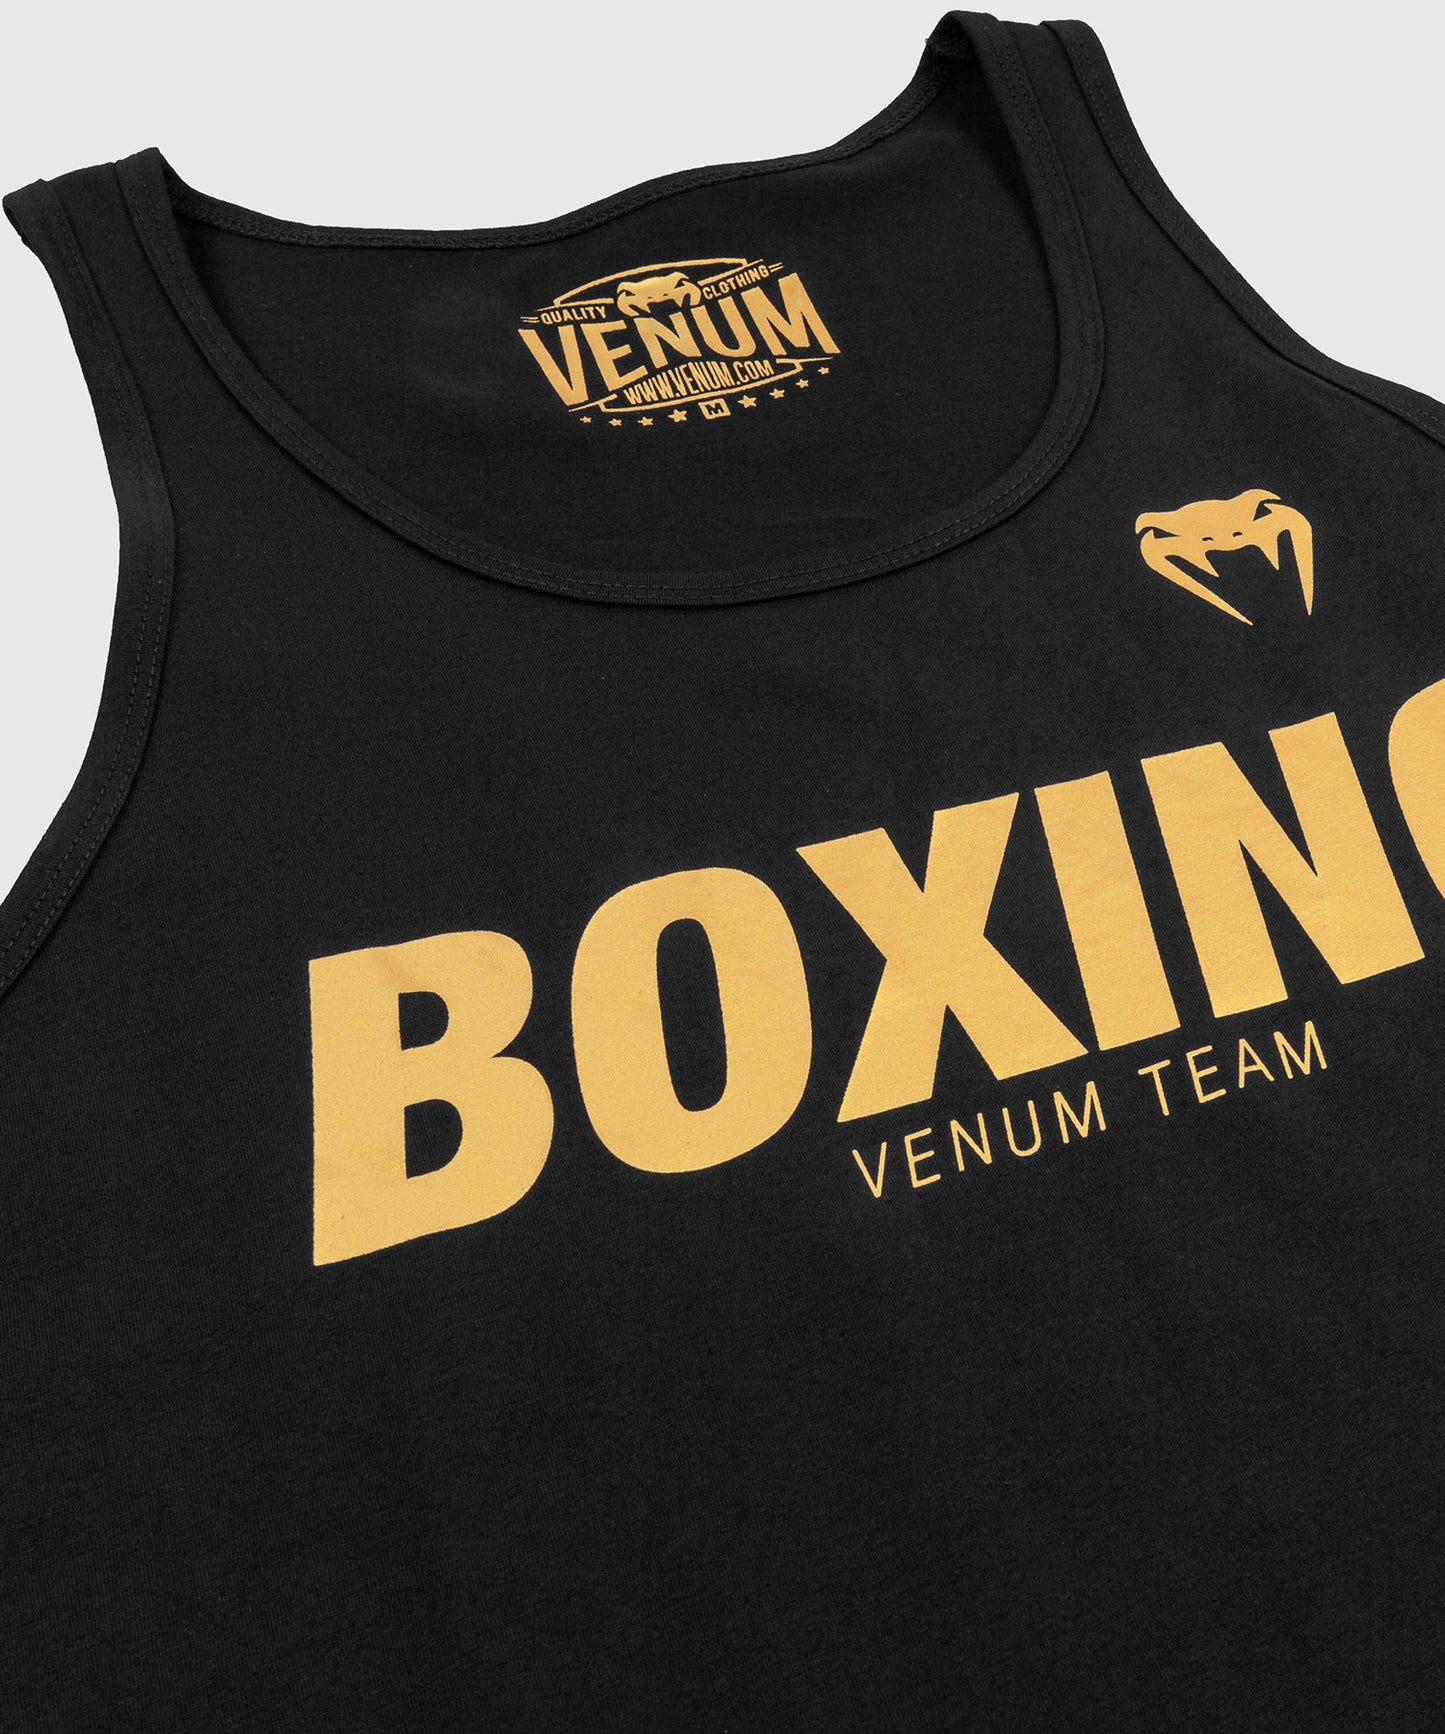 Venum Boxing VT Tank Top - Schwarz/Gold